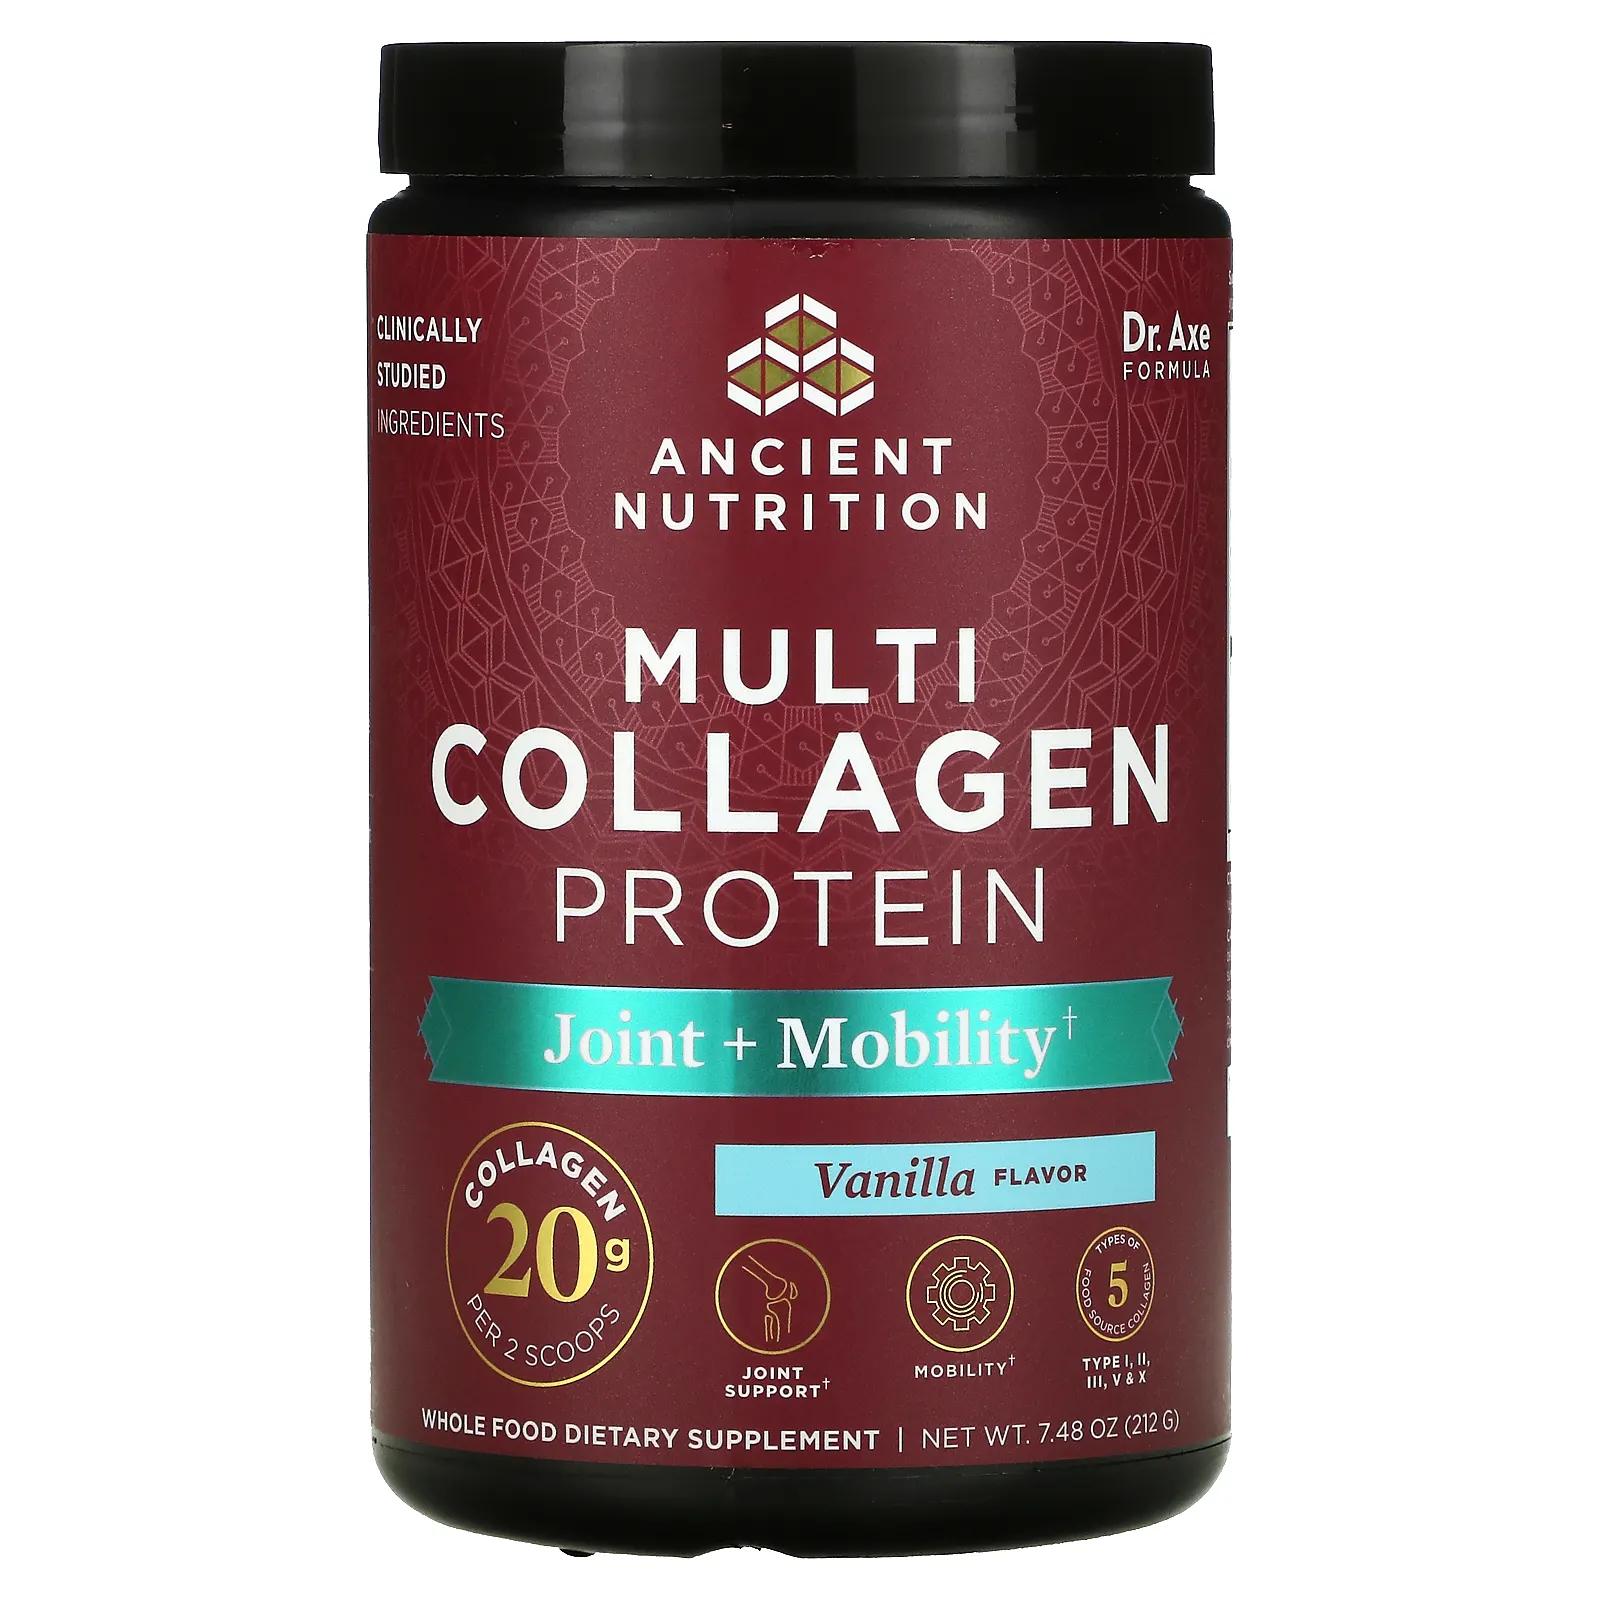 Dr. Axe / Ancient Nutrition Multi Collagen Protein Joint + Tissue Vanilla 8 oz (226 g) zhou nutrition mct collagen vanilla cinnamon 13 4 oz 379 g